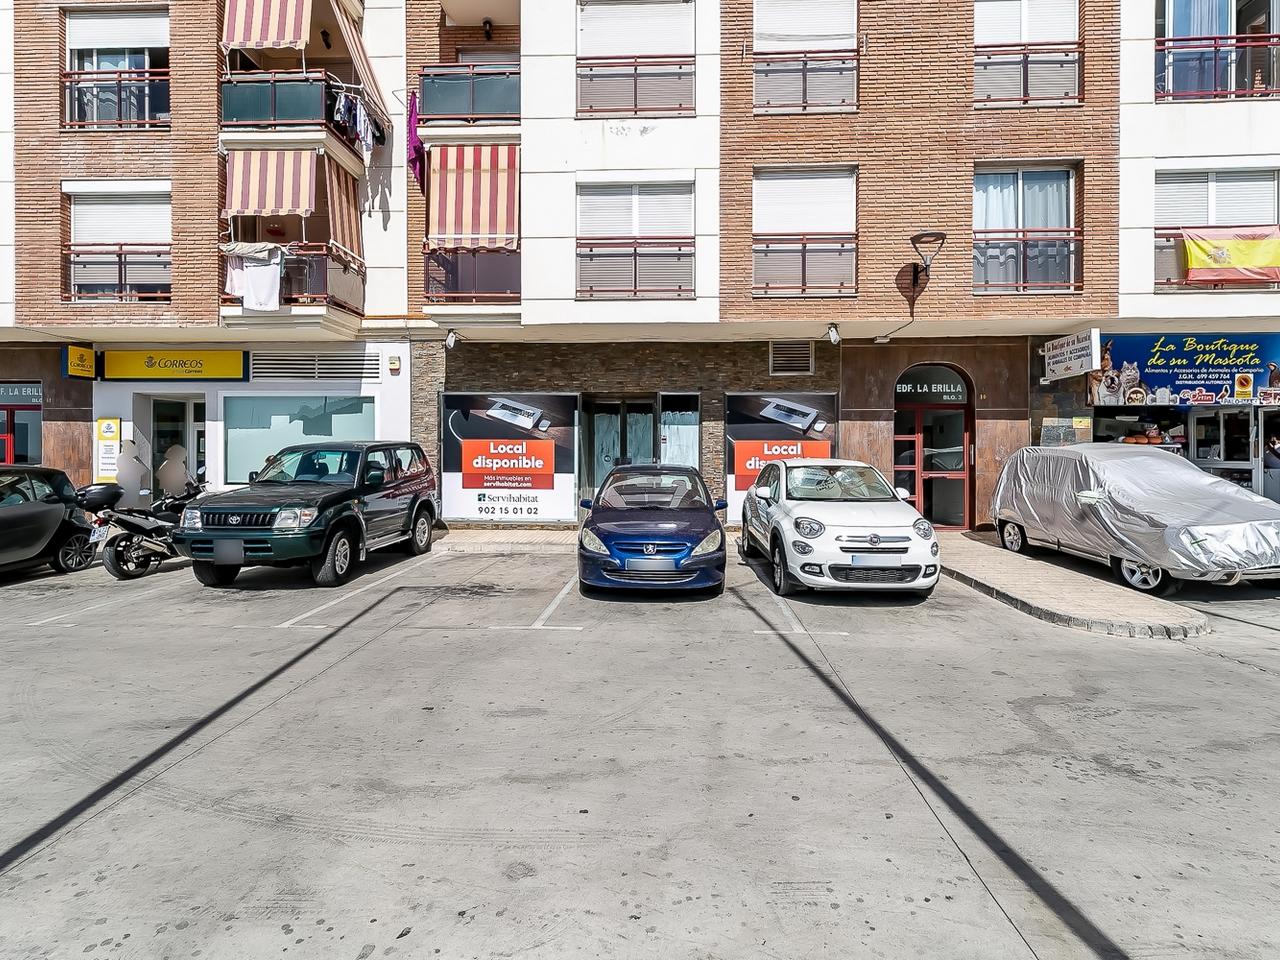 Venta de casas y pisos en Algarrobo Málaga